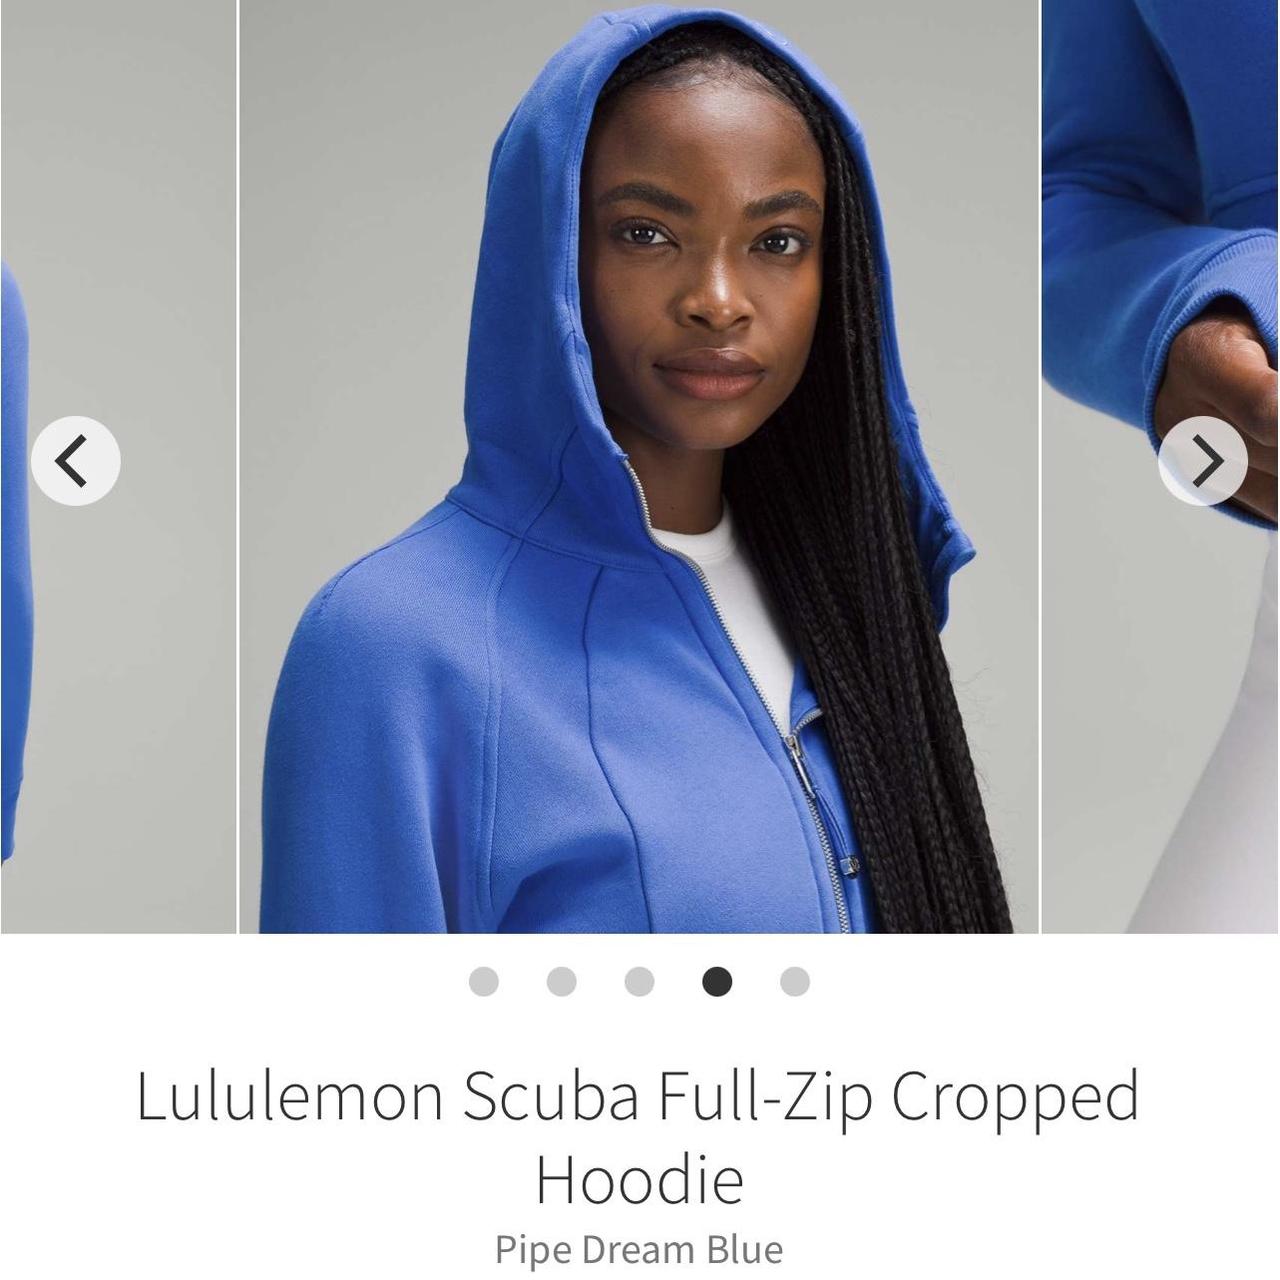 Lululemon Scuba Full Zip Cropped Hoodie size 4 - Depop